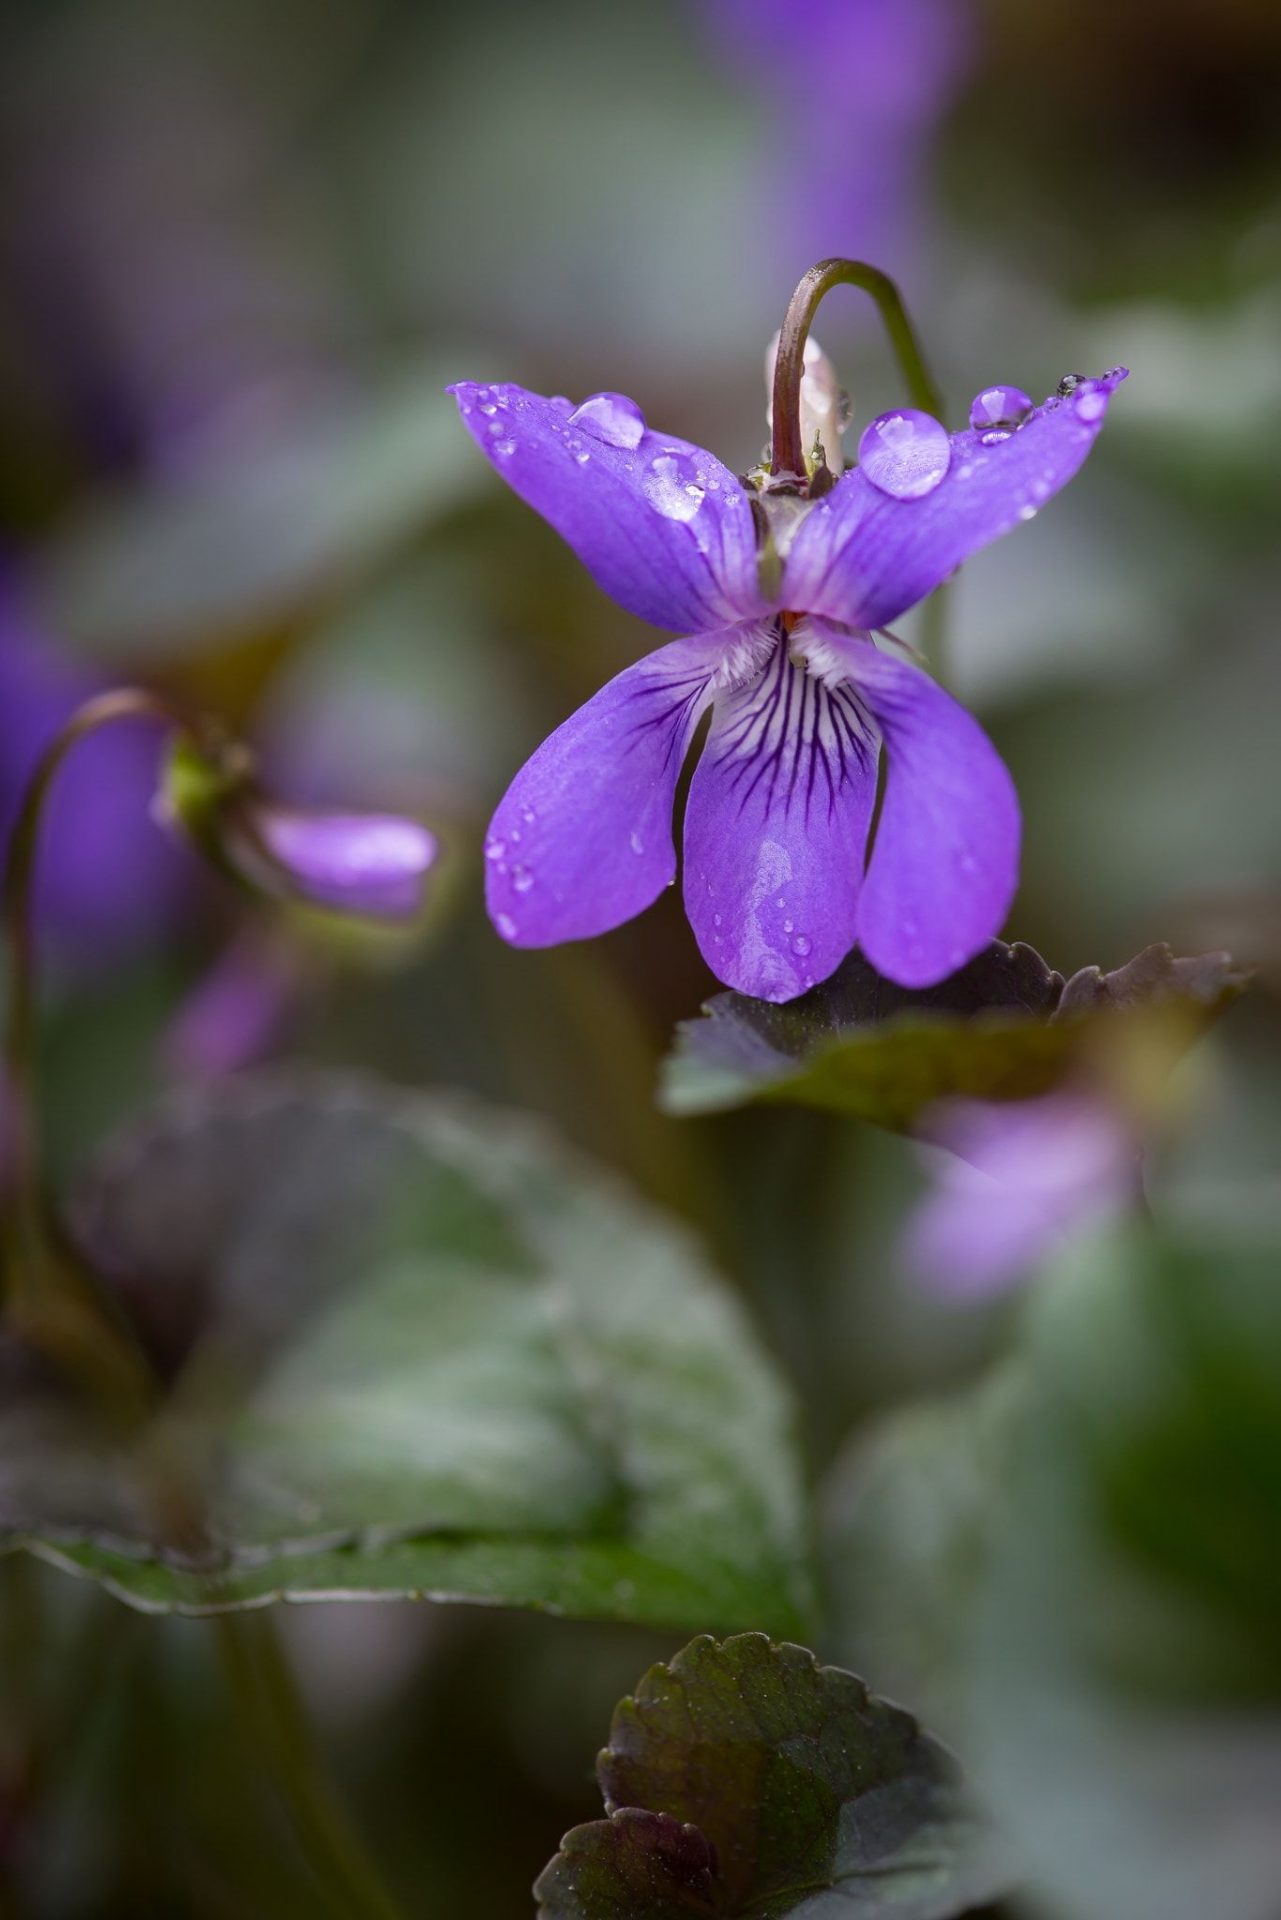 Violet được biết đến là biểu tượng của tình yêu thầm kín và sự nhạy cảm. Hoa này còn mang ý nghĩa của sự thủy chung và hy vọng. Đừng bỏ lỡ cơ hội hiểu thêm về loài hoa tuyệt đẹp này.